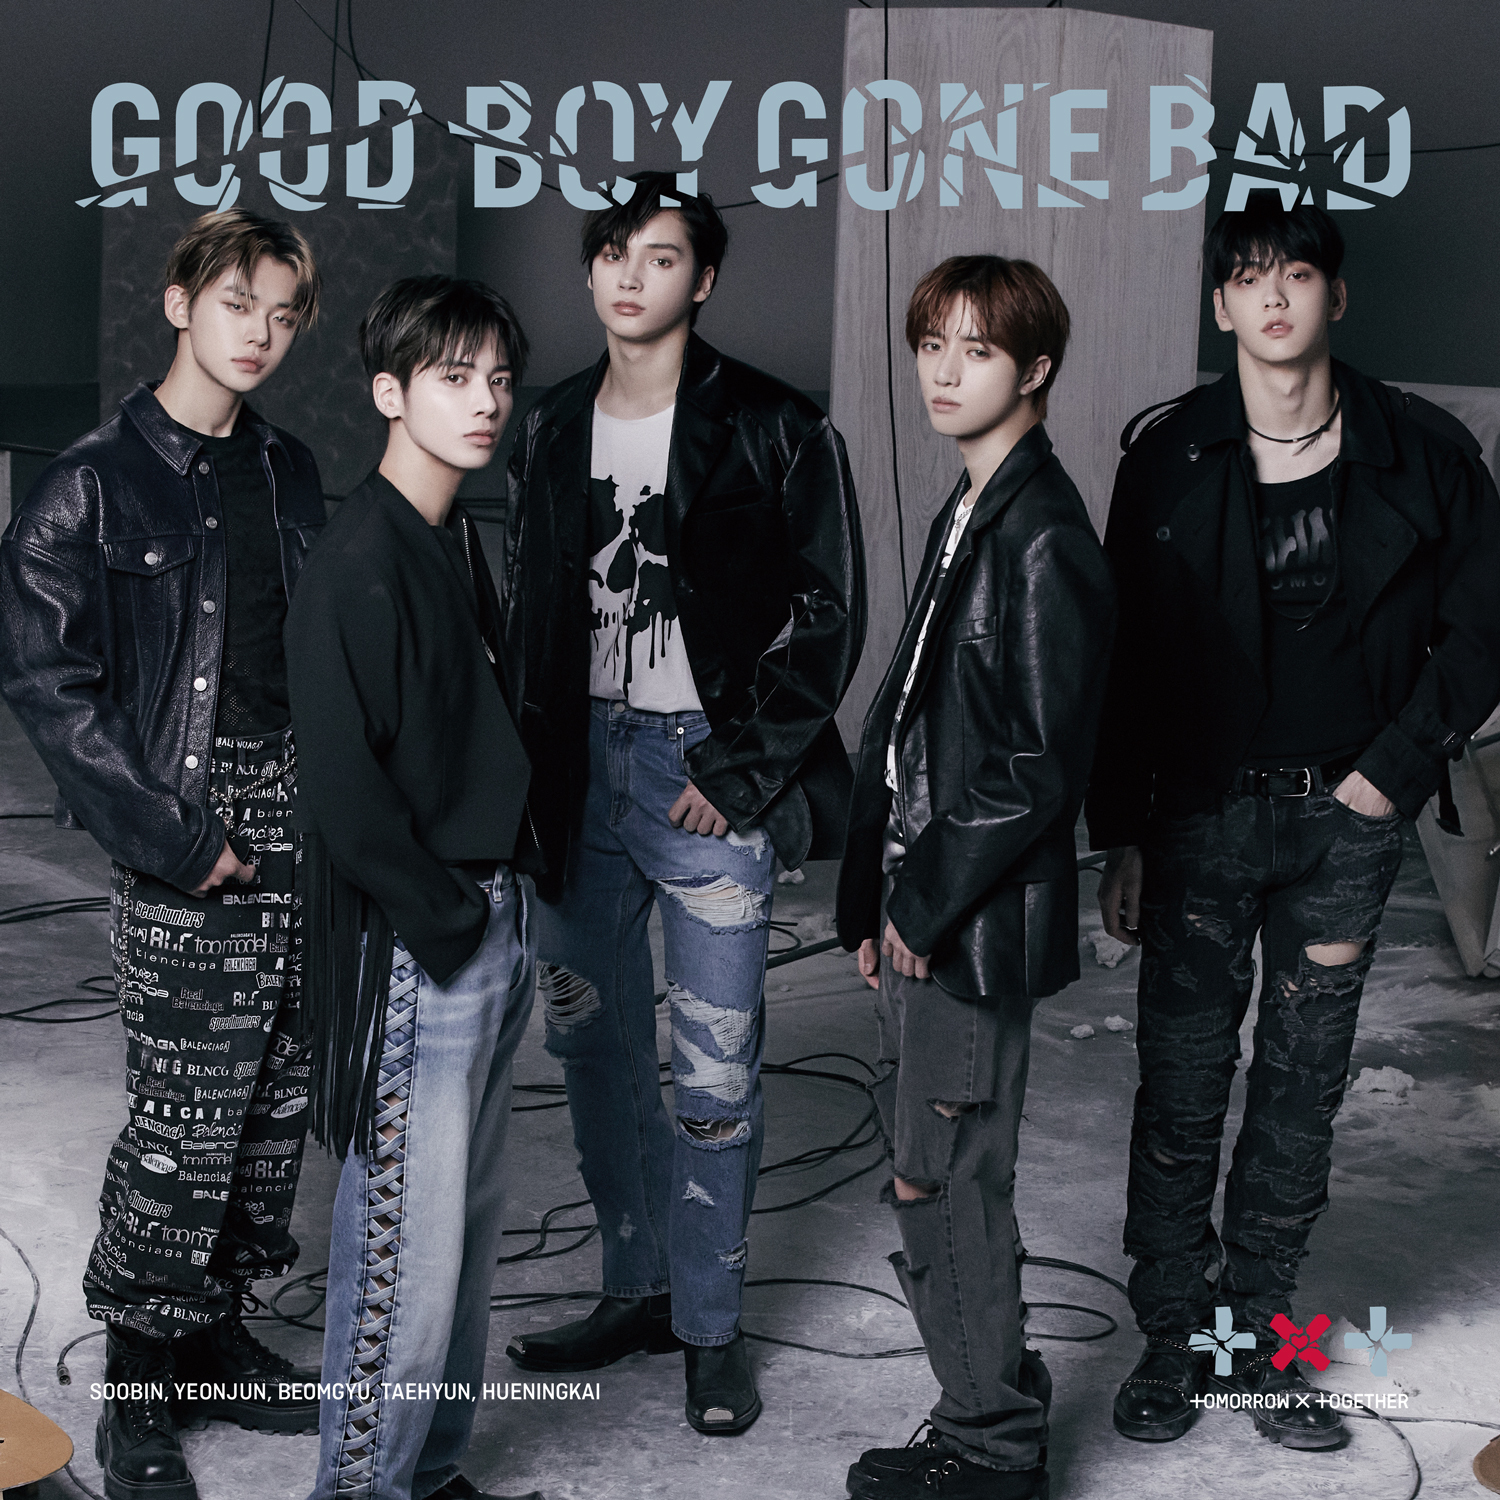 [影音] TXT - Good Boy Gone Bad 日文版